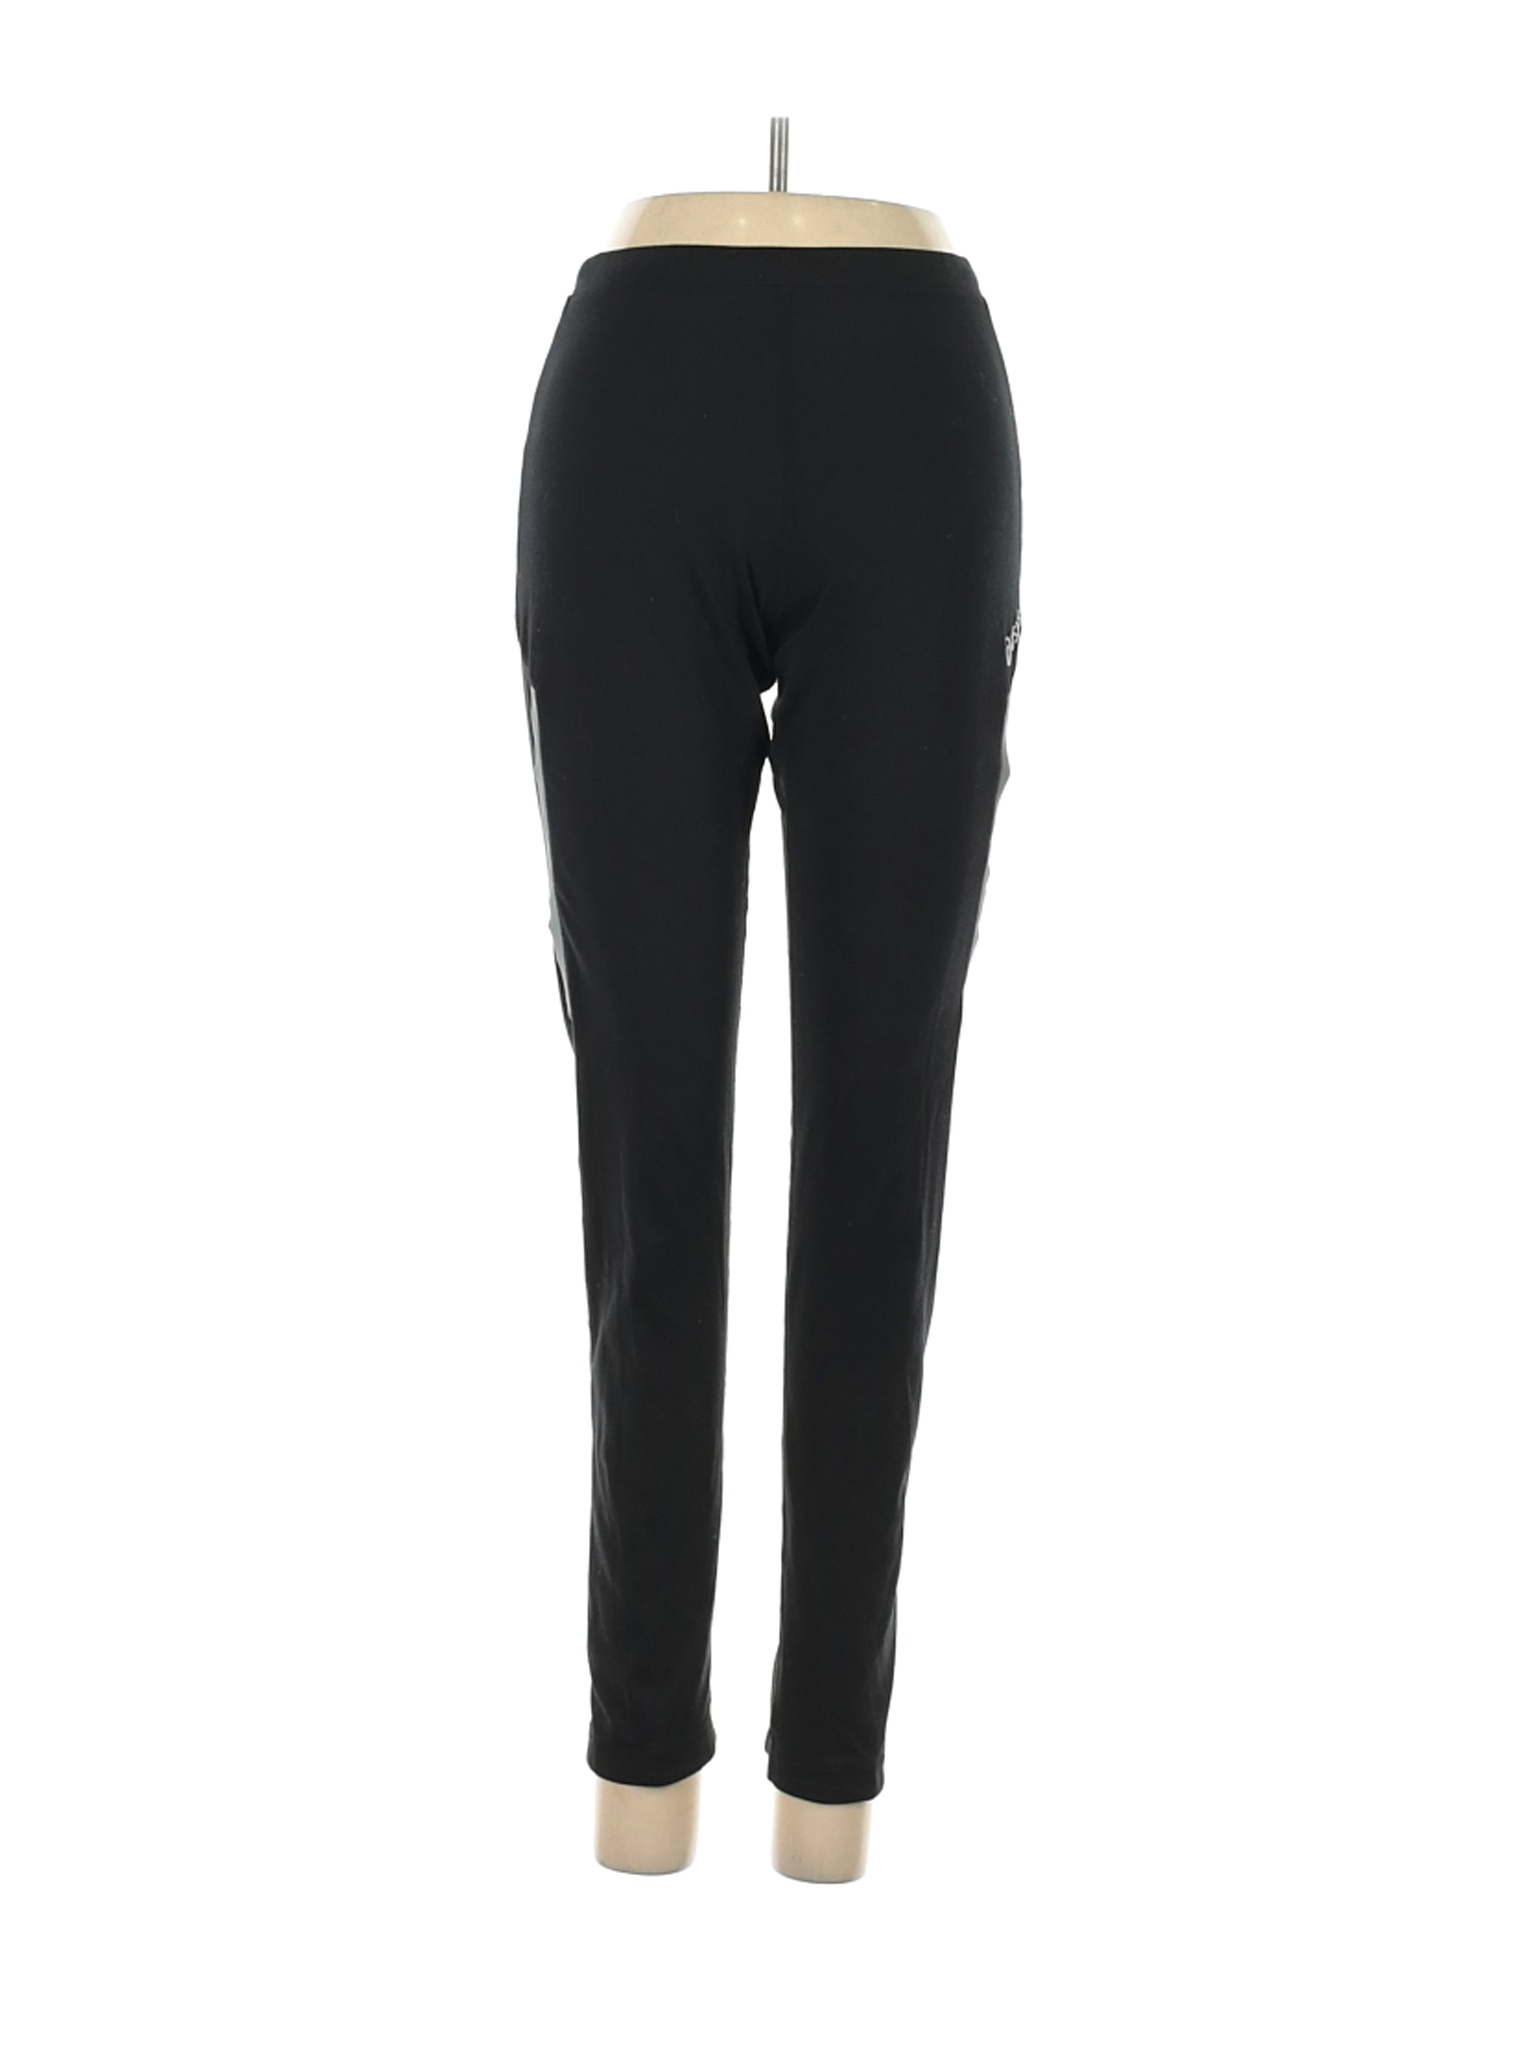 Oasis Women Black Active Pants S | eBay